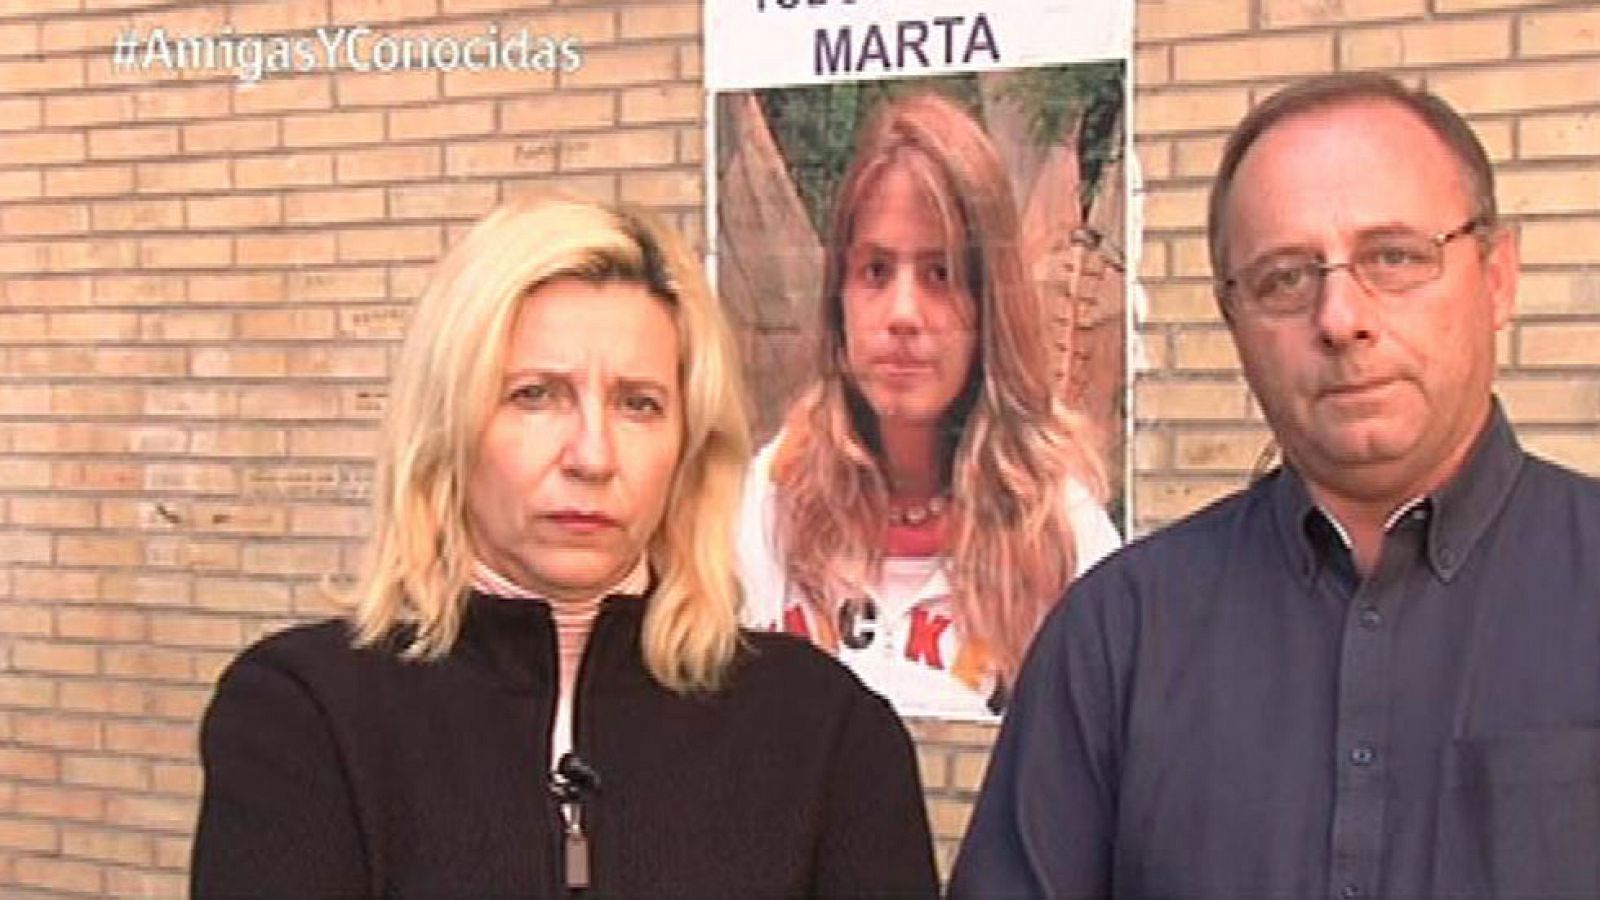 Amigas y conocidas - Madre de Marta del Castillo: 'La justicia es injusta, se protege más al delincuente que a la víctima'